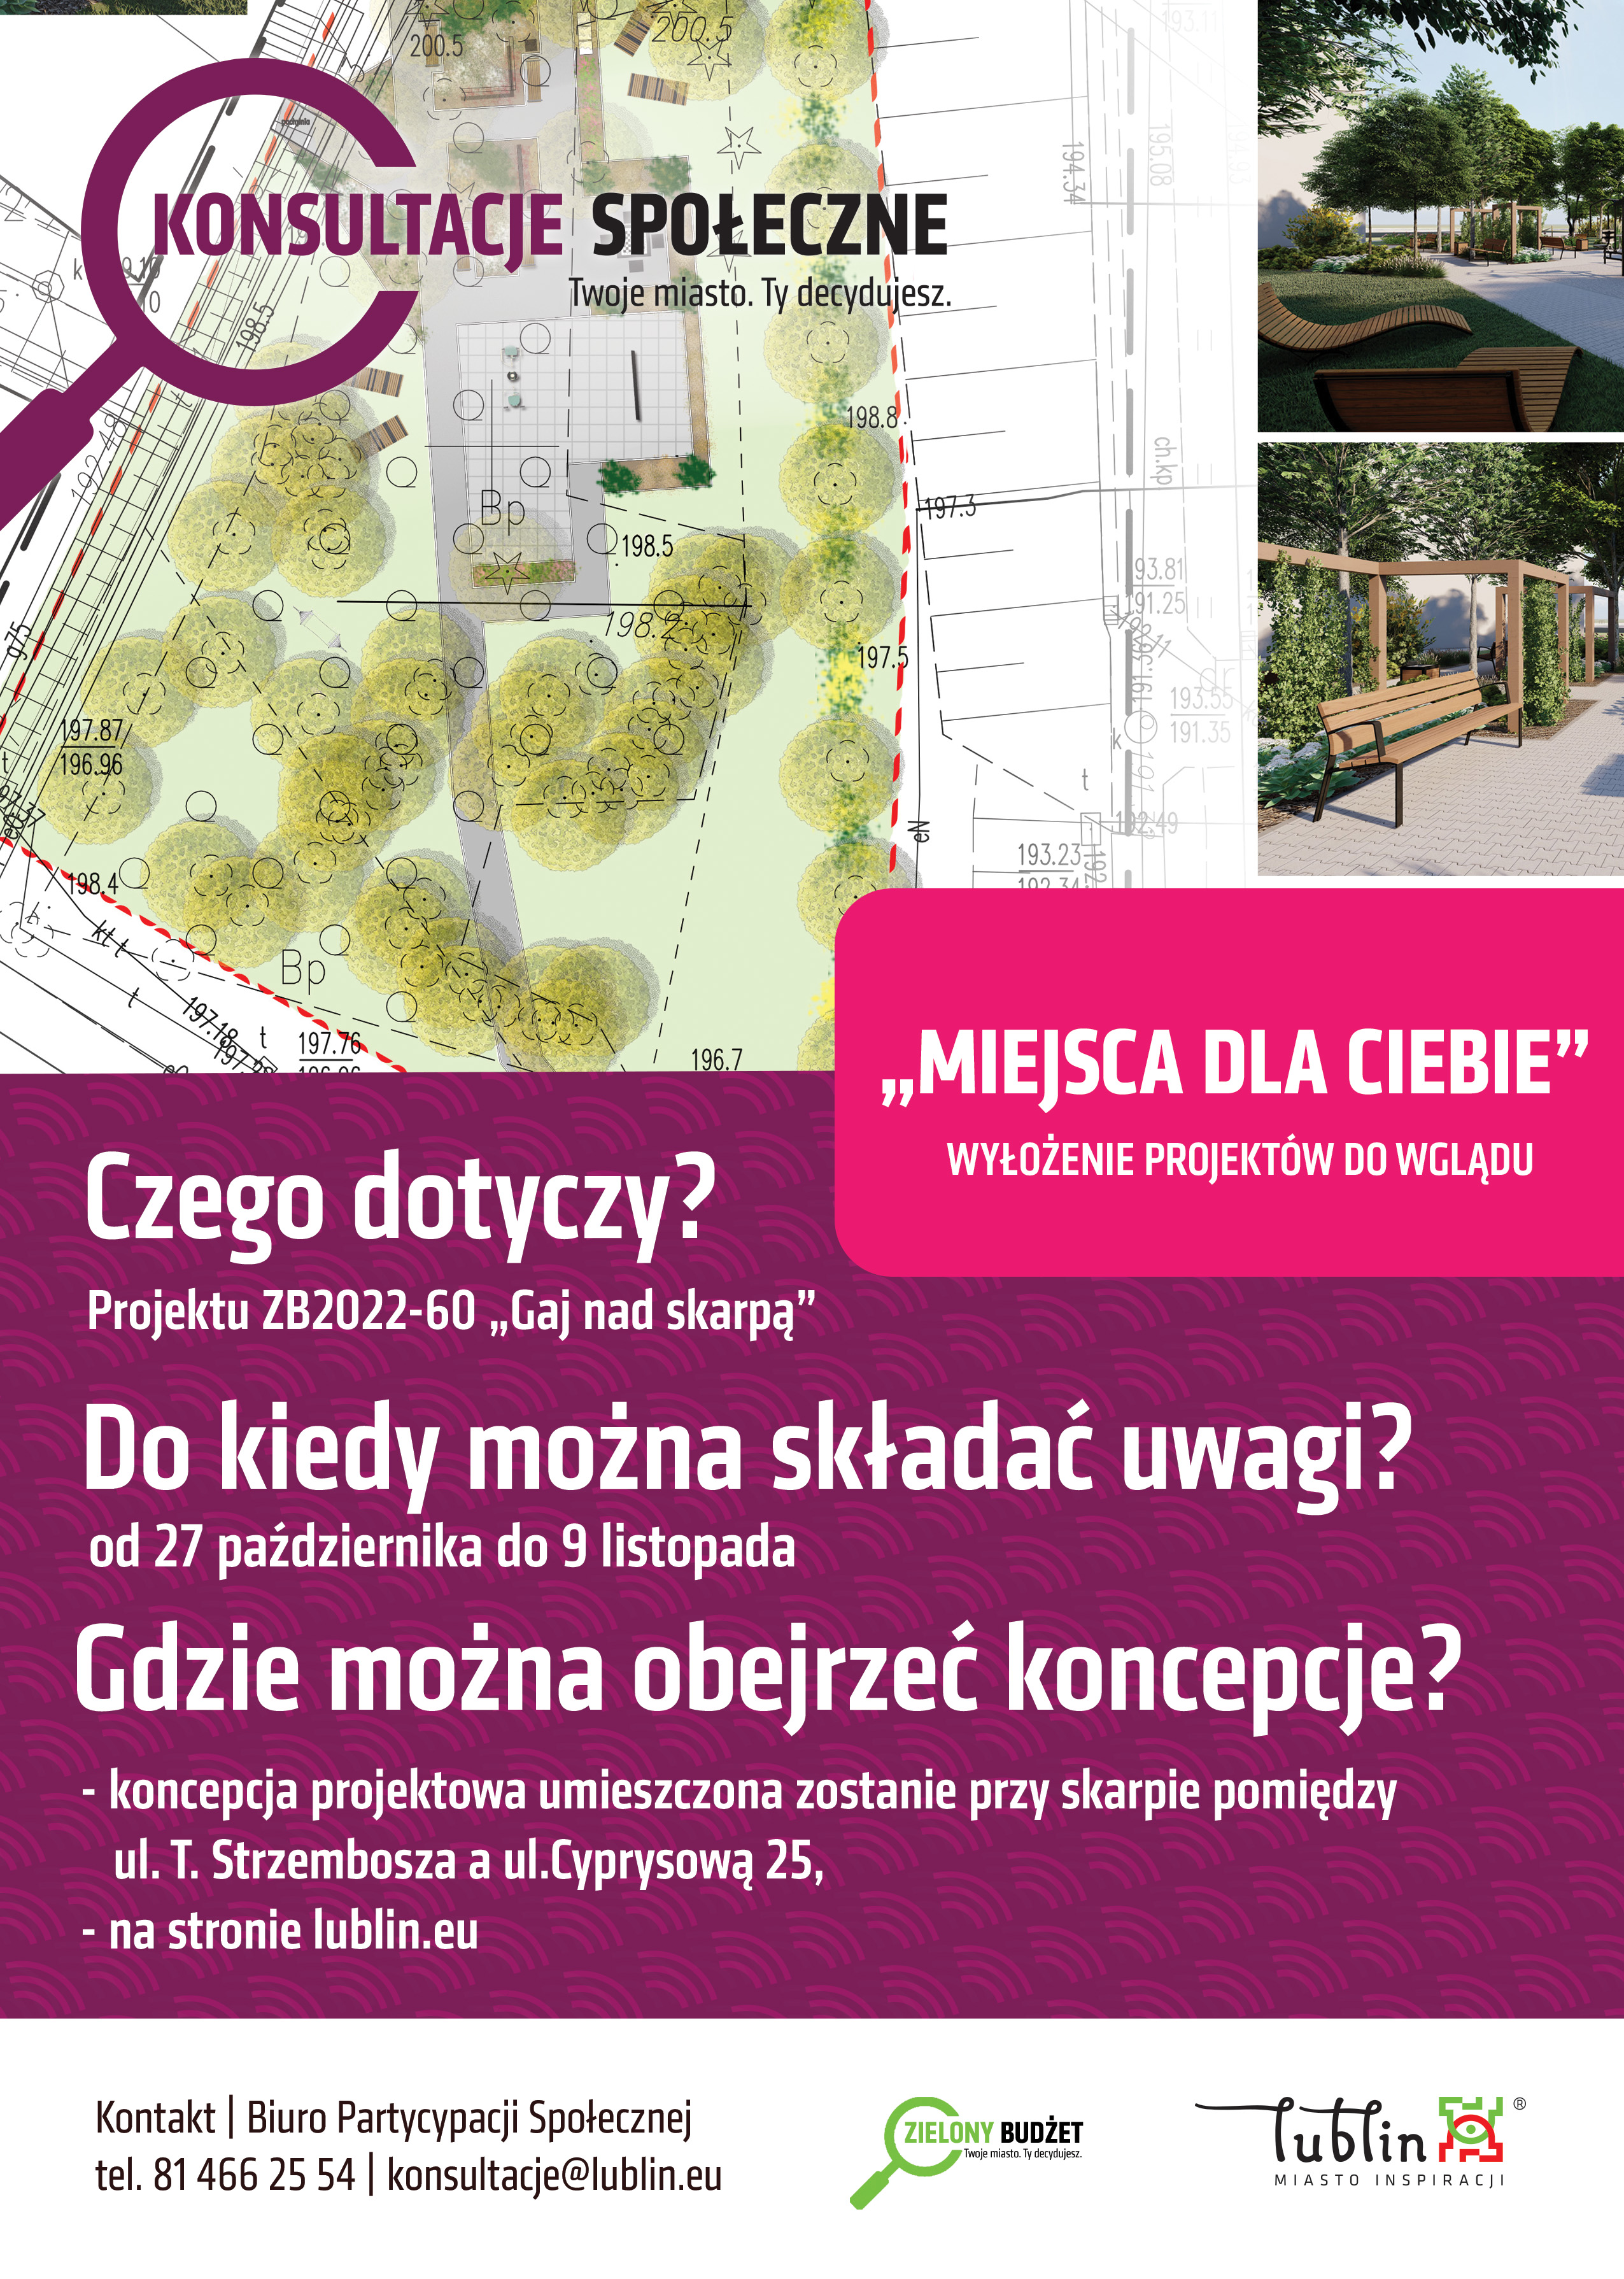 Są koncepcje „Skweru marzeń” i „Gaju nad skarpą” w Lublinie (wizualizacje)